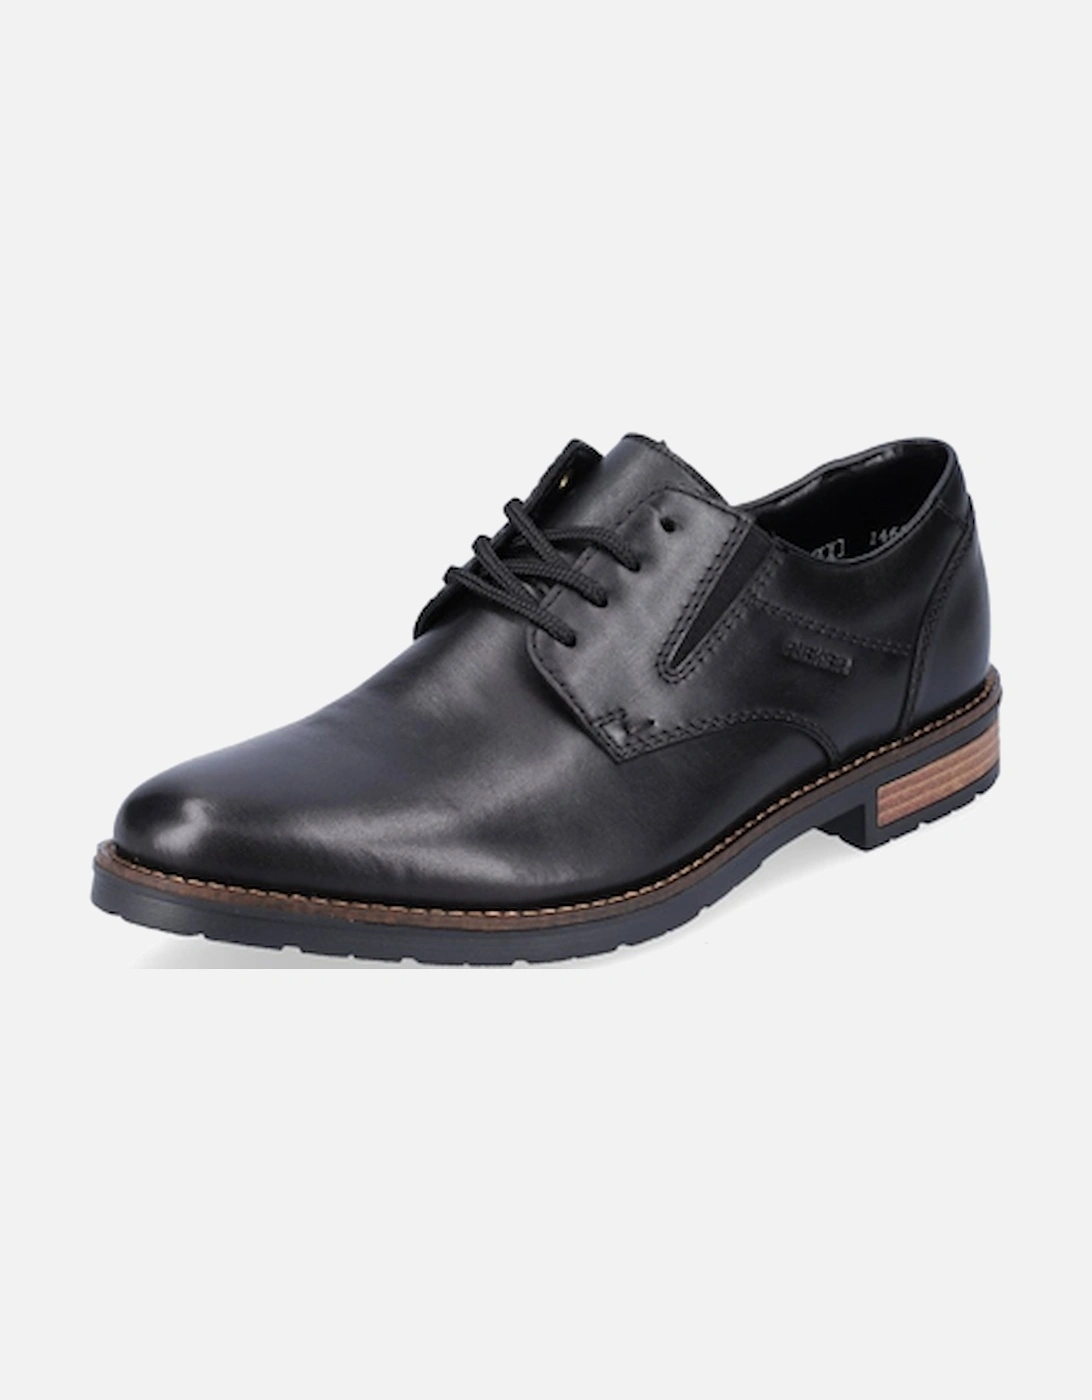 Men's 14621-00 Formal Lace Up Shoe Black, 6 of 5